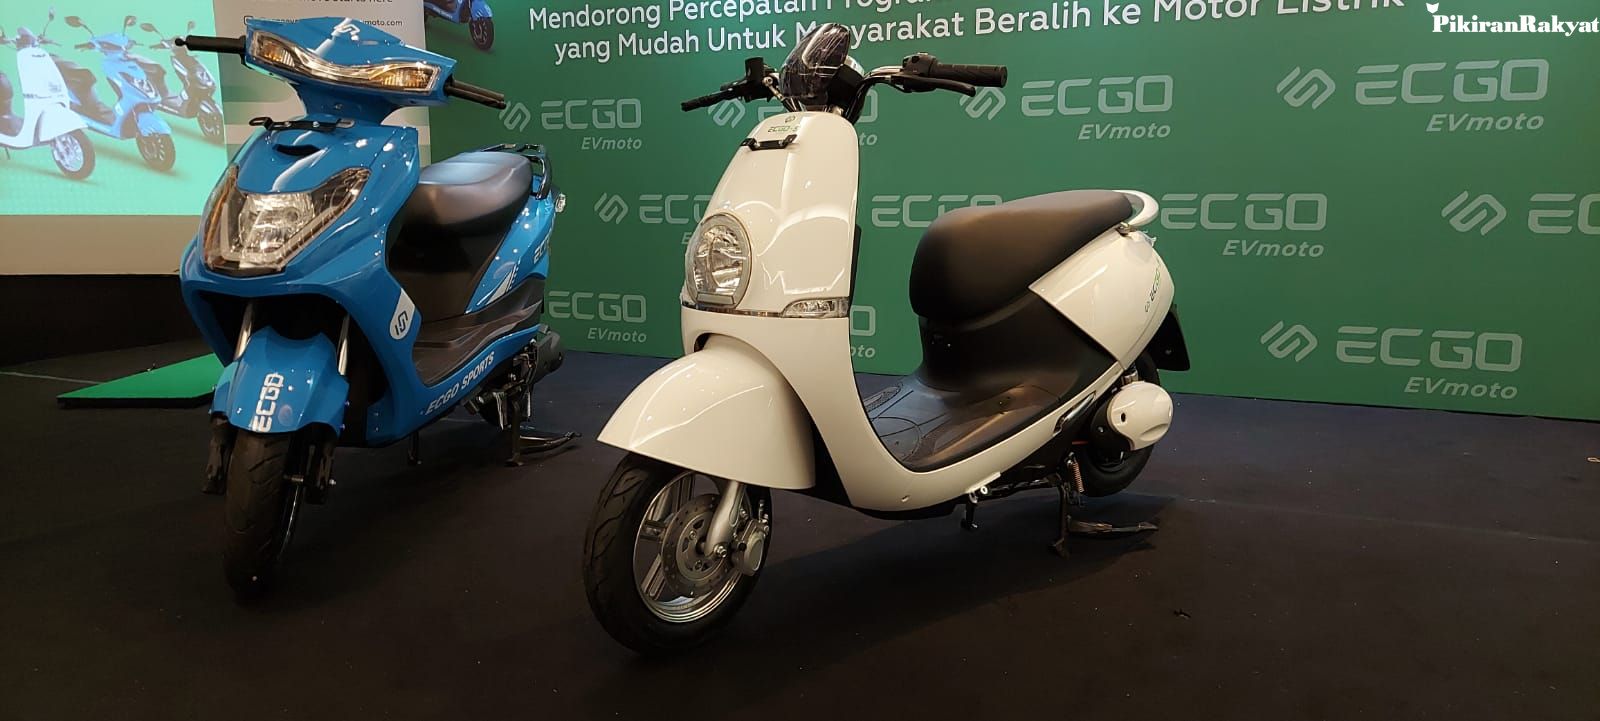 Brand motor listrik asal China,  ECGO EV Moto hadir di pasar Indonesia.